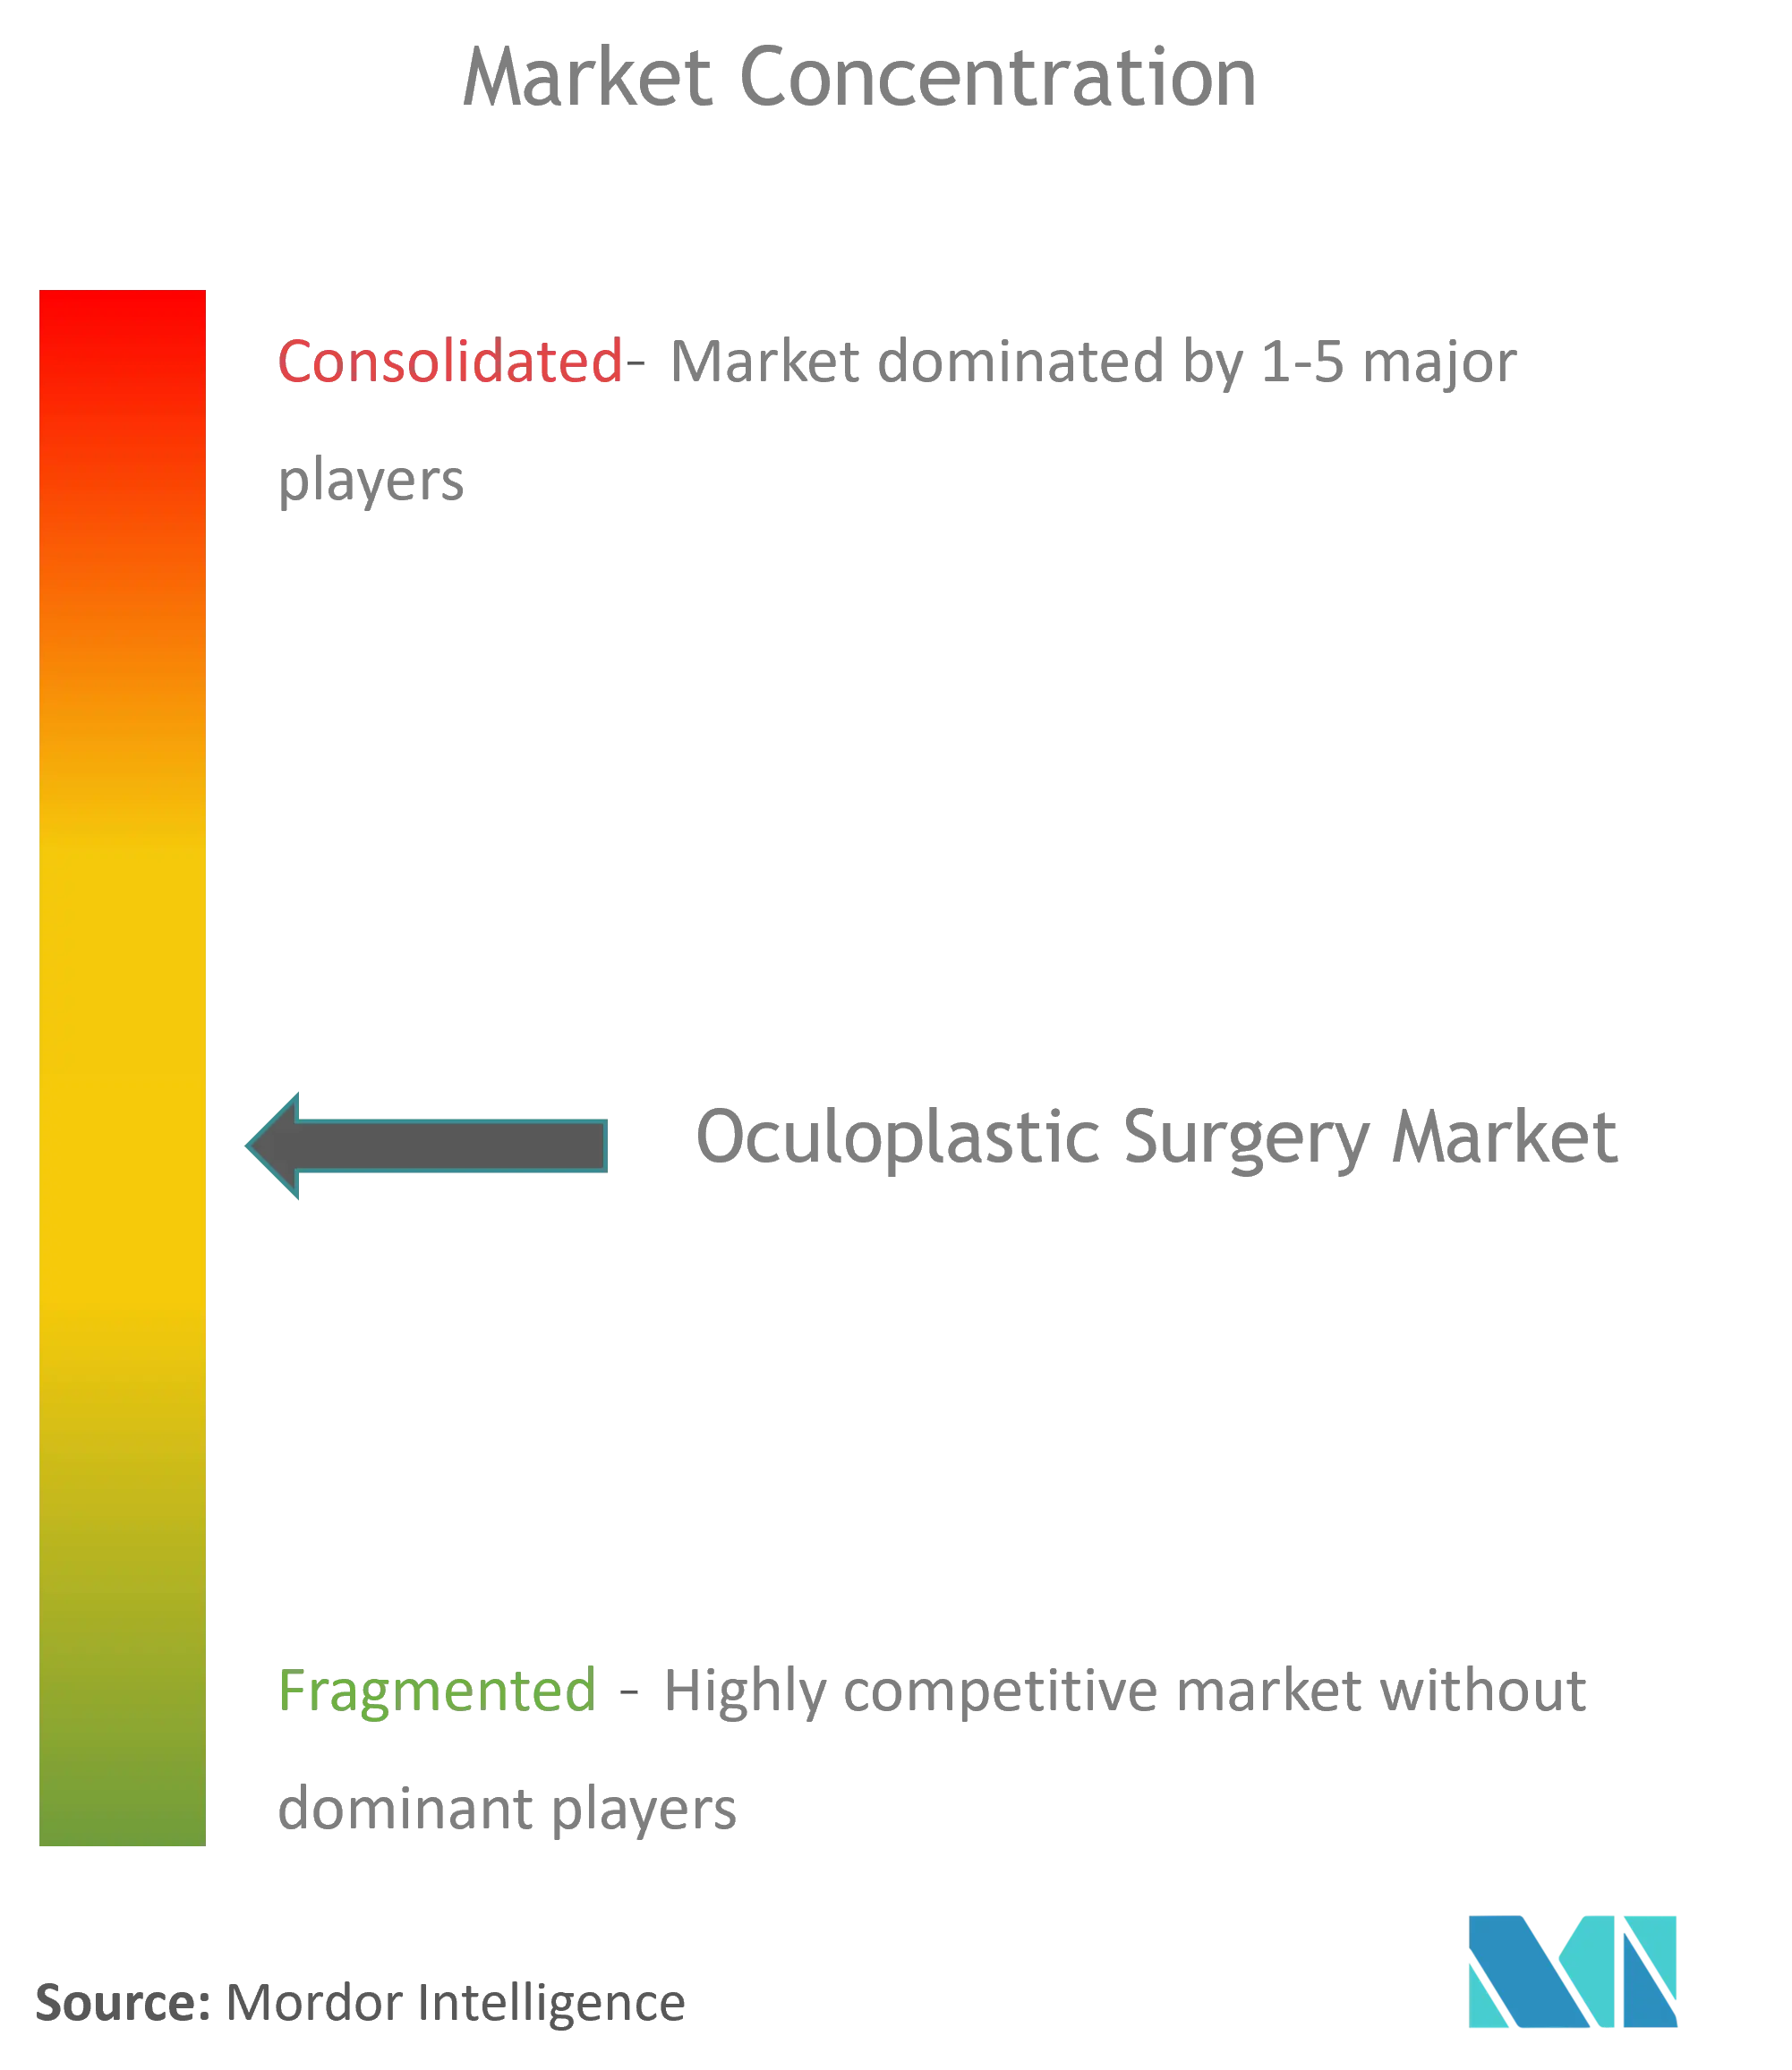 Marktkonzentration für okuloplastische Chirurgie